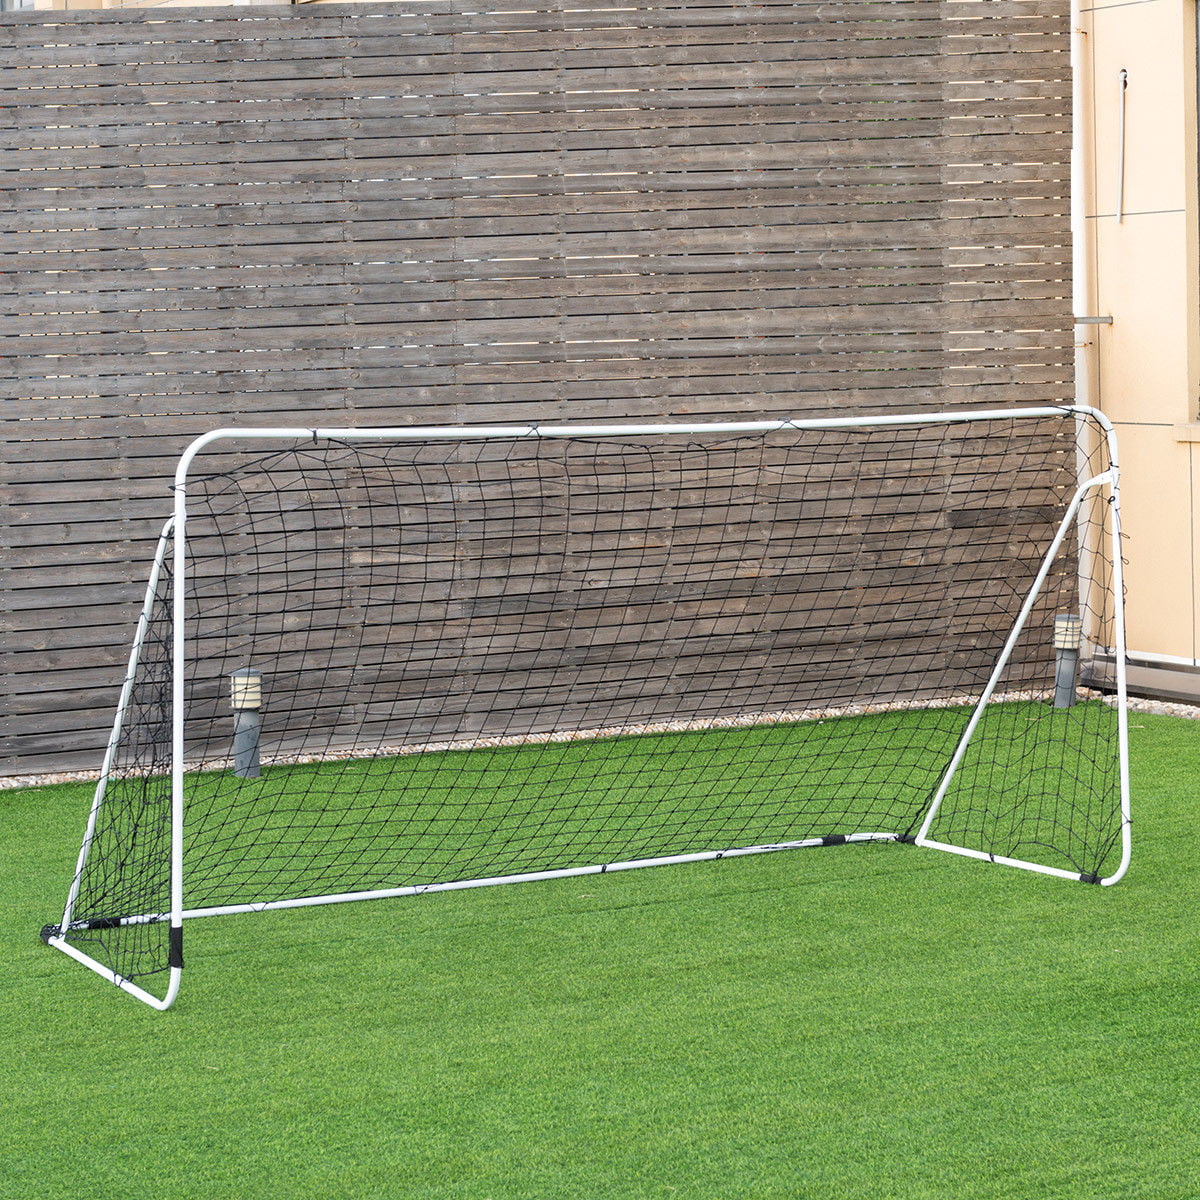 Costway 12' x 6' Steel Football Soccer Goal Net Gate ...